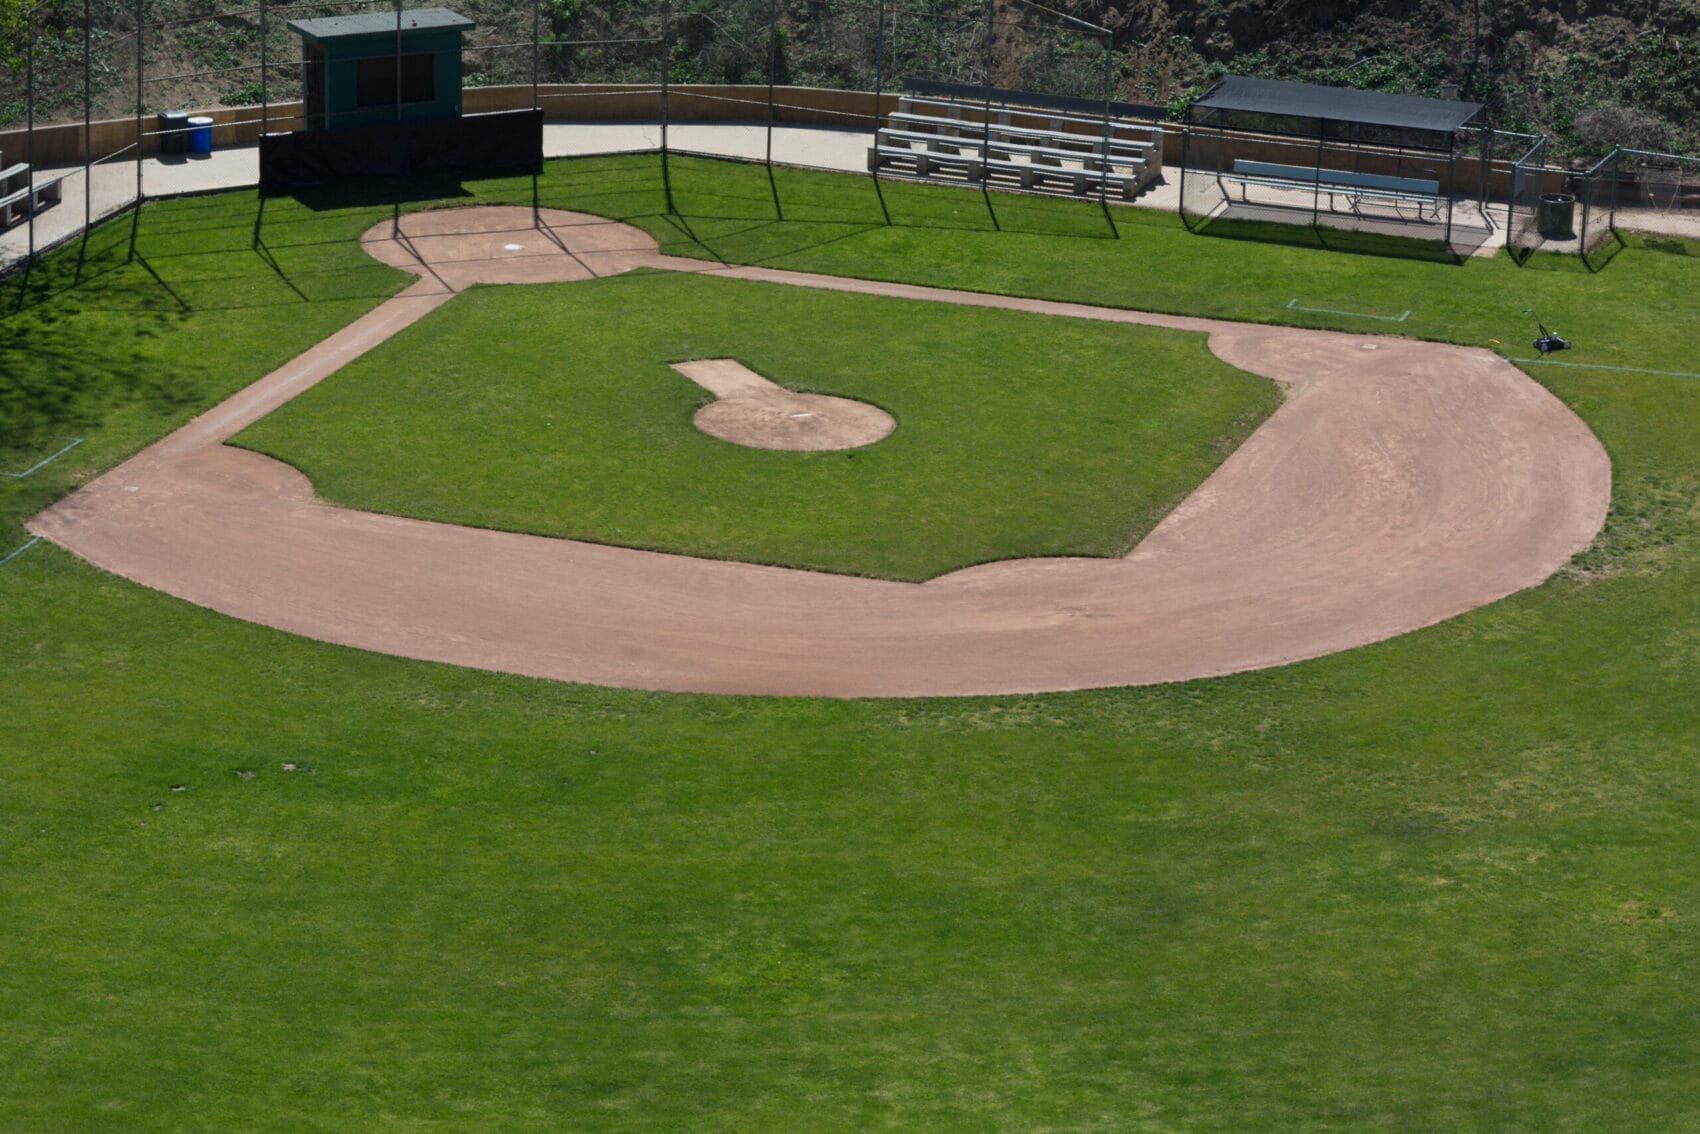 LIttle League baseball field with green grass and dirt